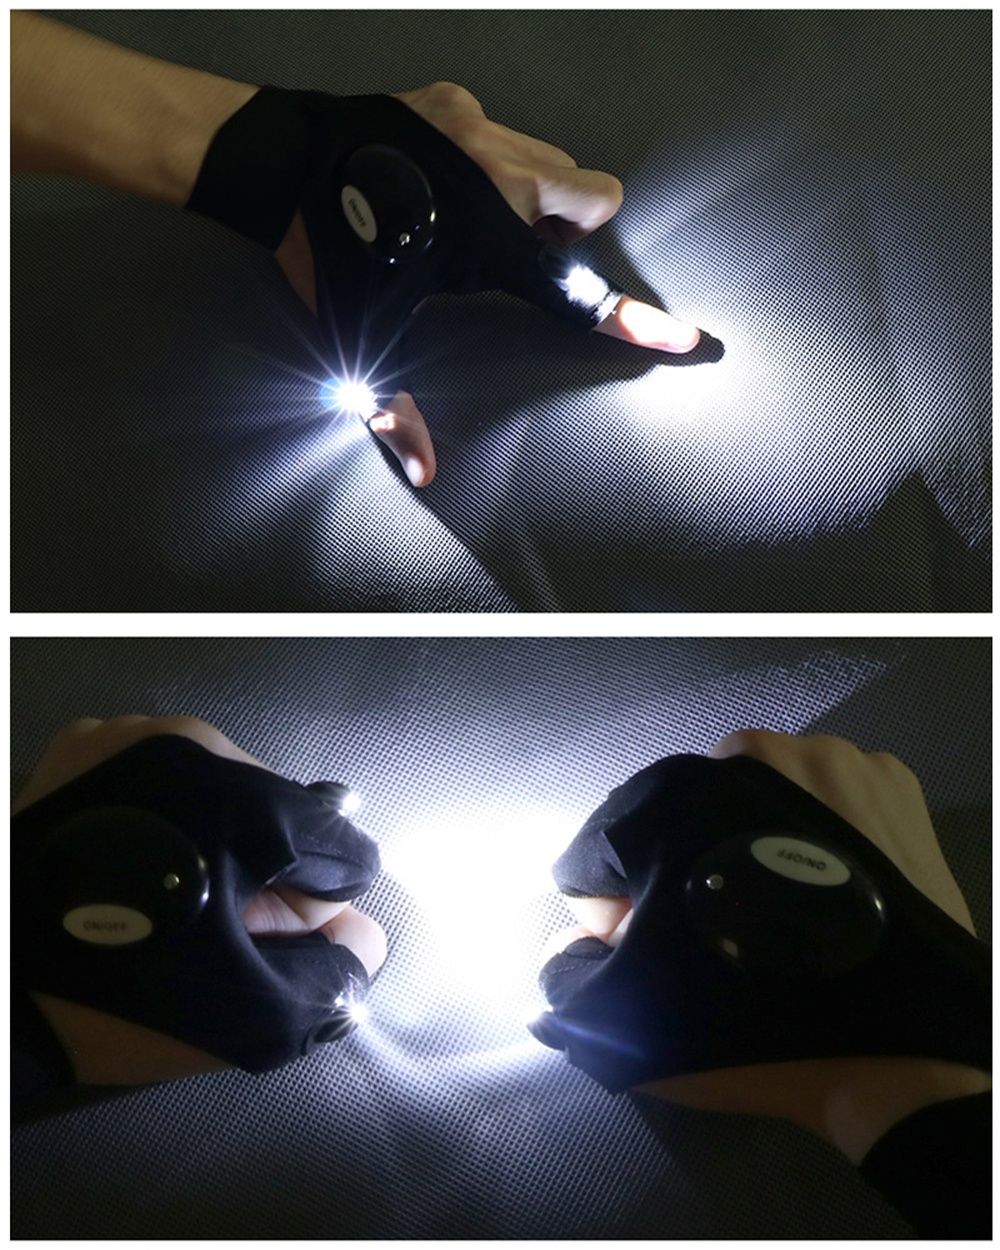 Ръкавици с LED фенер